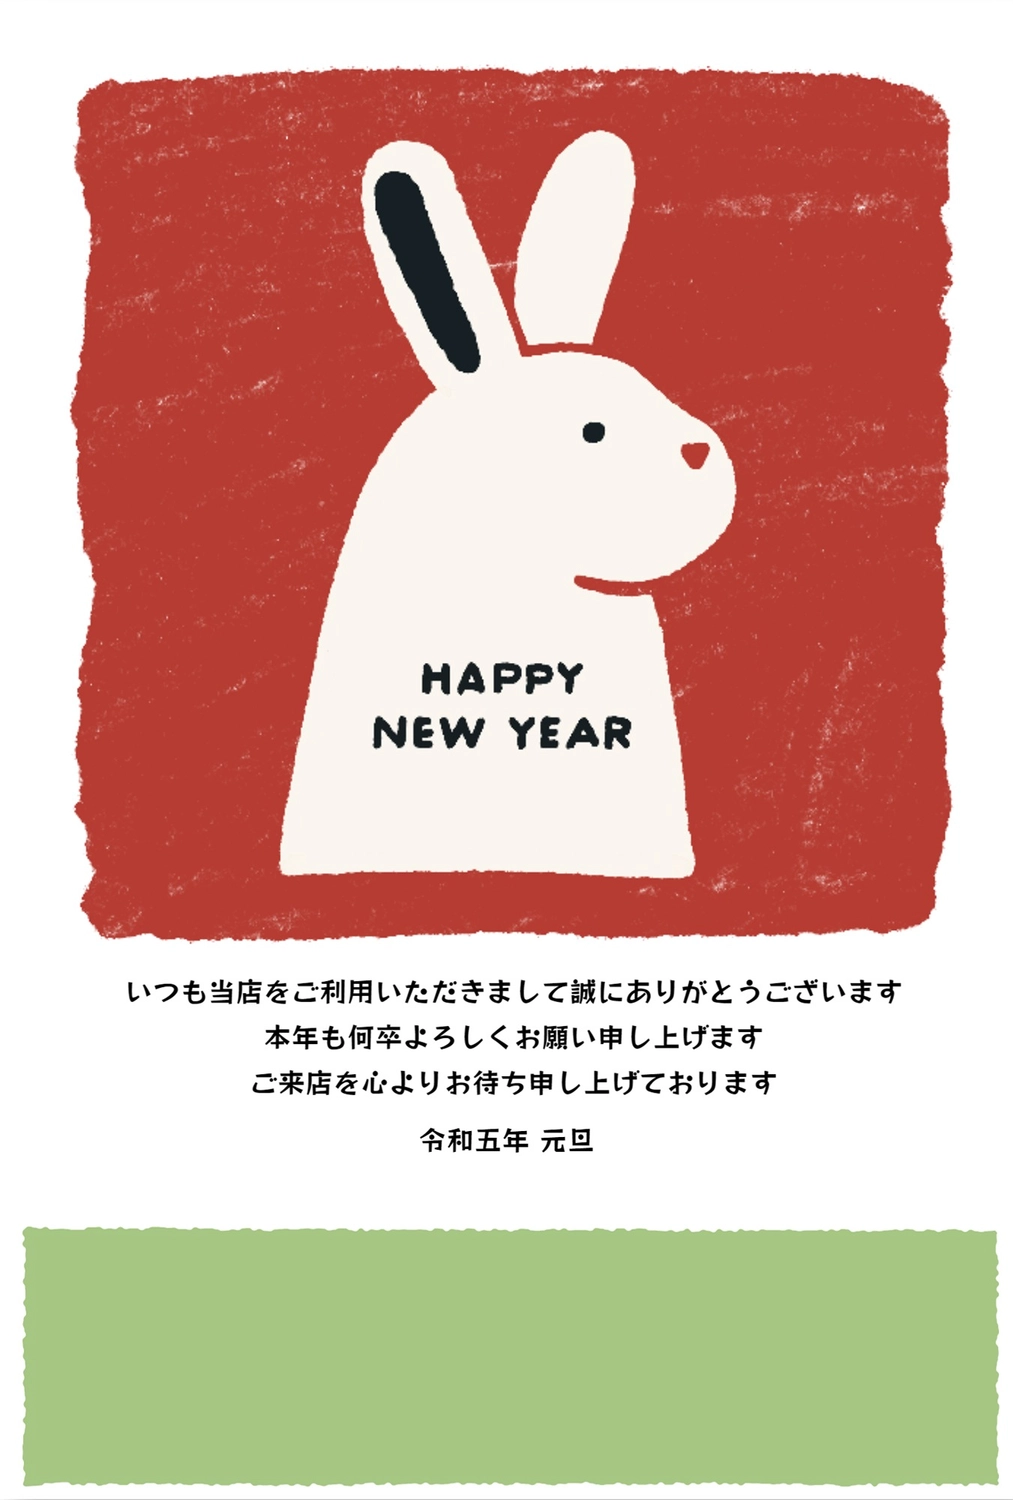 年賀状　赤地に右を向いたうさぎ, cute, turn to the right, Red background, New Year Card template